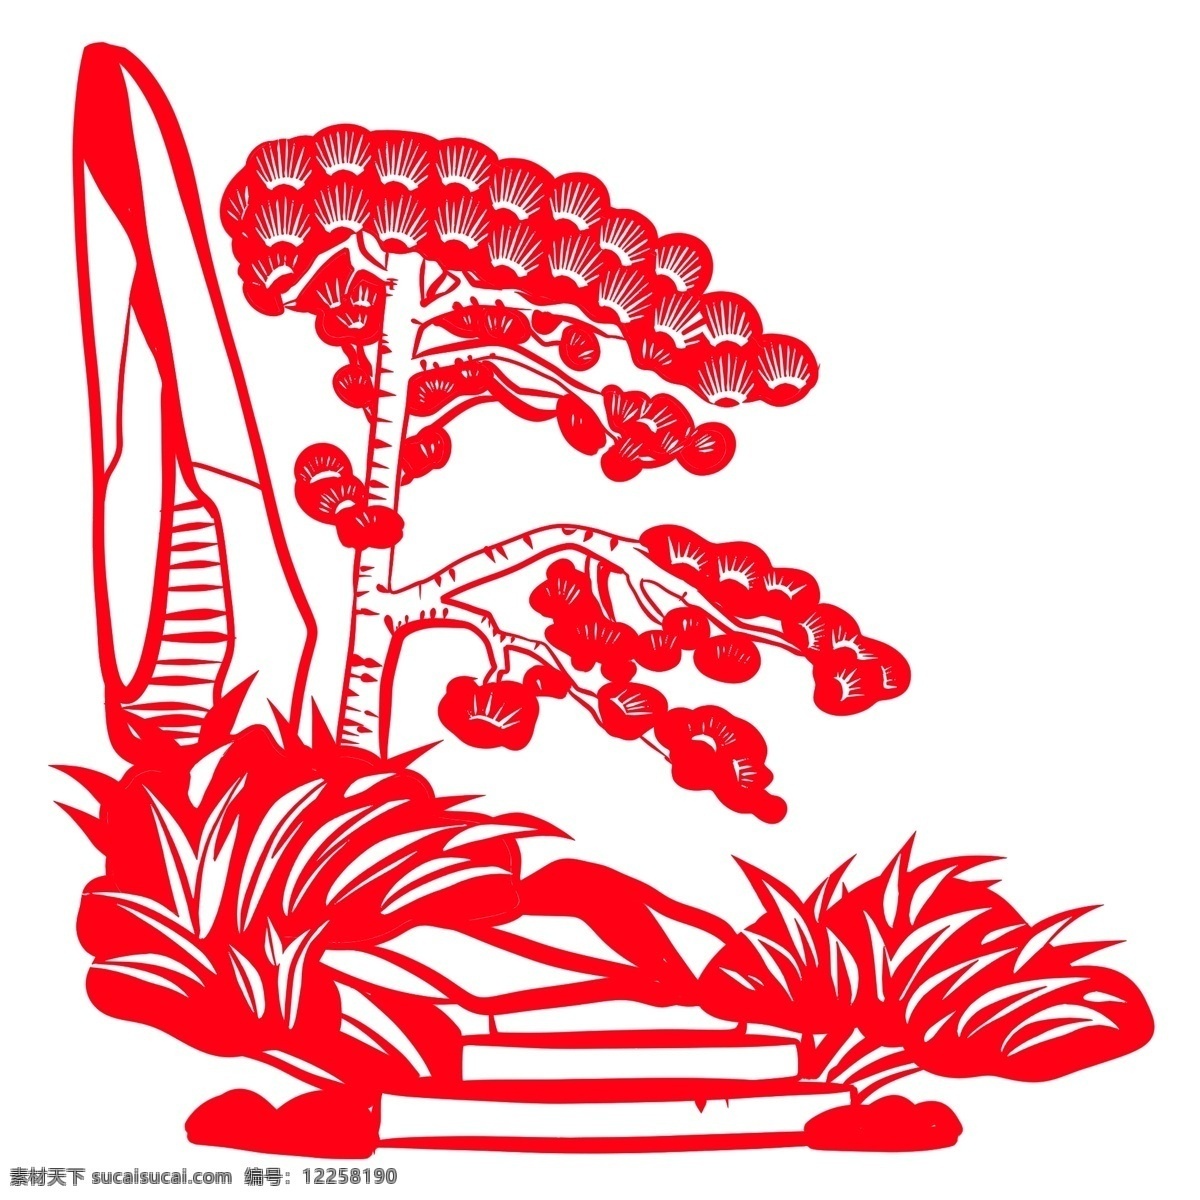 中国 风 节日 剪纸 画 动物 形象 窗花 挂件 矢量 剪纸画 艺术 展示 中国风 生肖 卡通设计